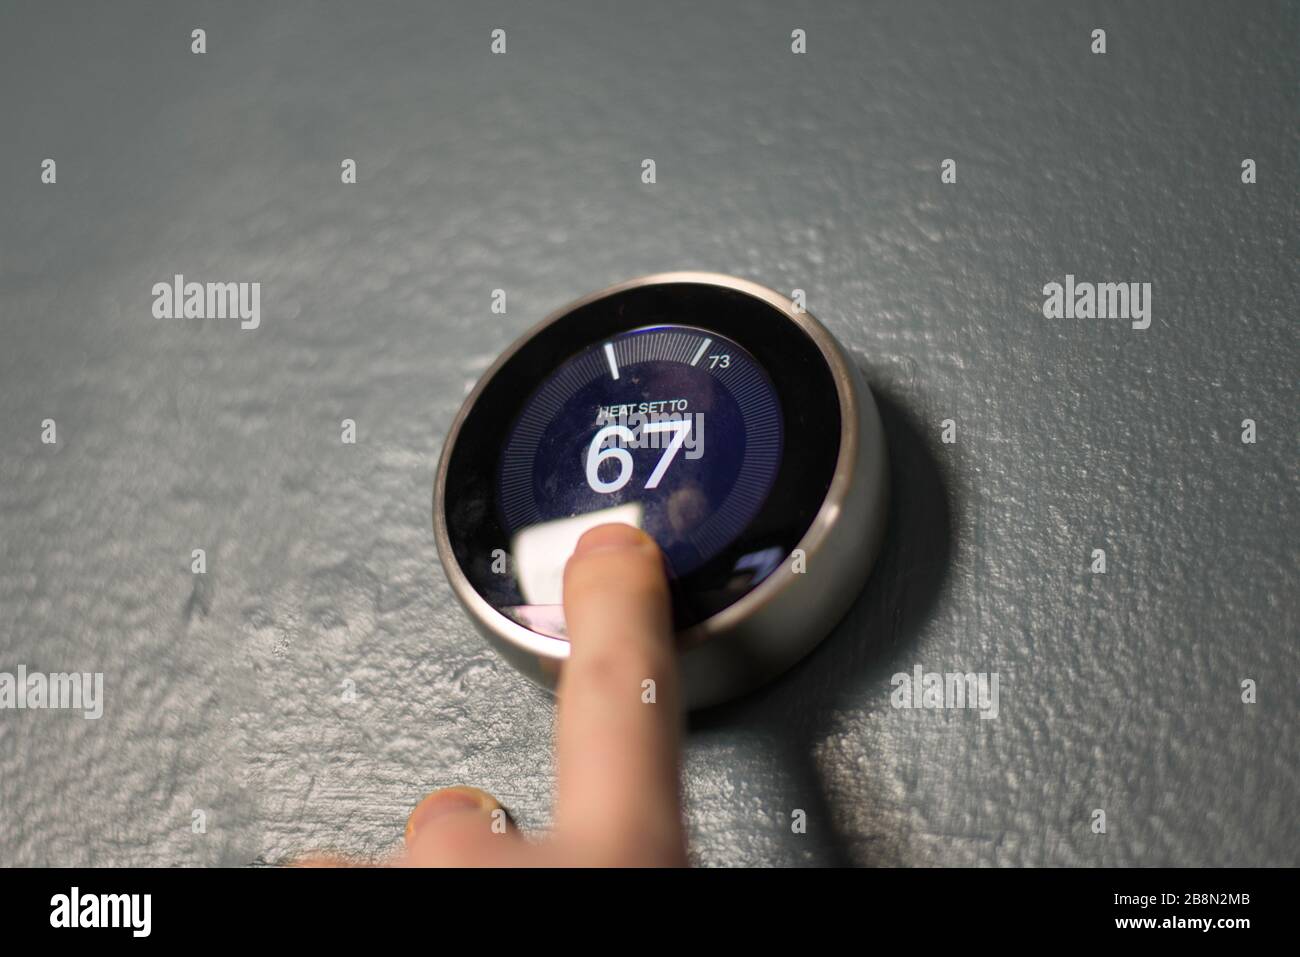 Handverstellung des Messuhr am Smart-Home-Thermostat. Drücken Sie die mittlere Taste, um Geld zu sparen, Heizung und Kühlung. Stockfoto